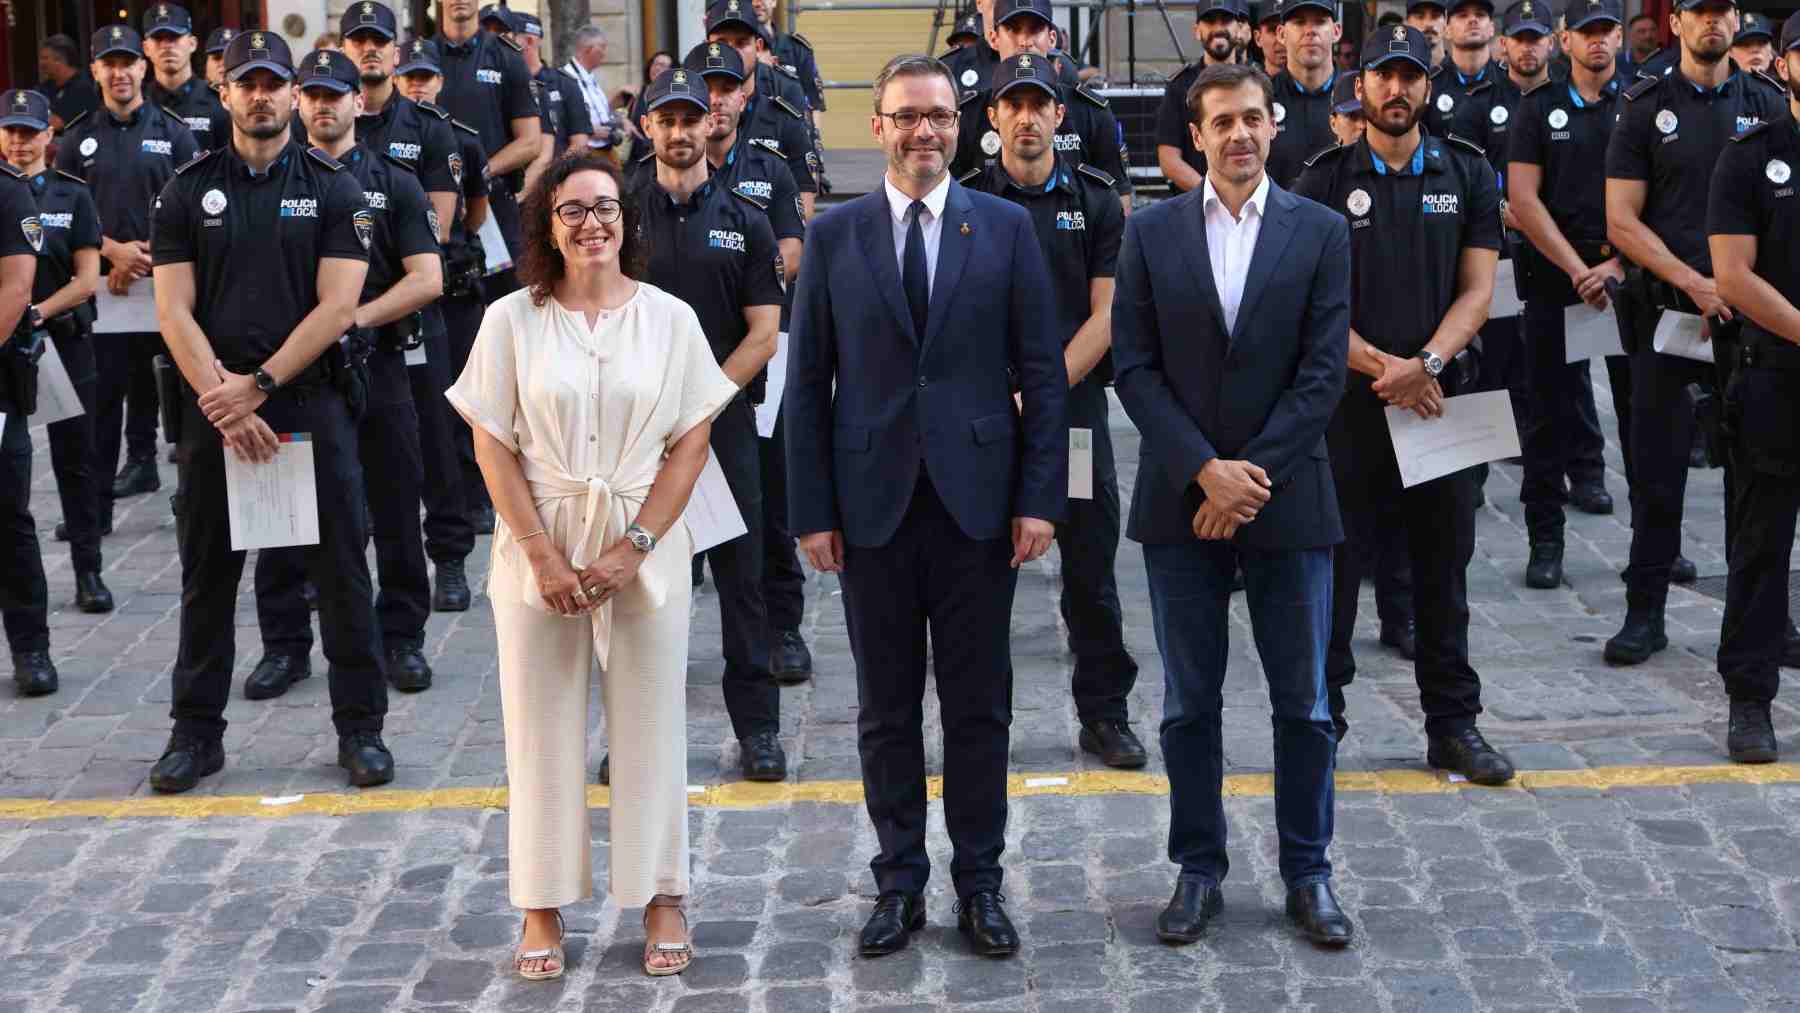 El alcalde de Palma, José Hila, flanqueado por los ediles de Seguridad, Joana María Adrover y el de Función Pública, Adrián García.